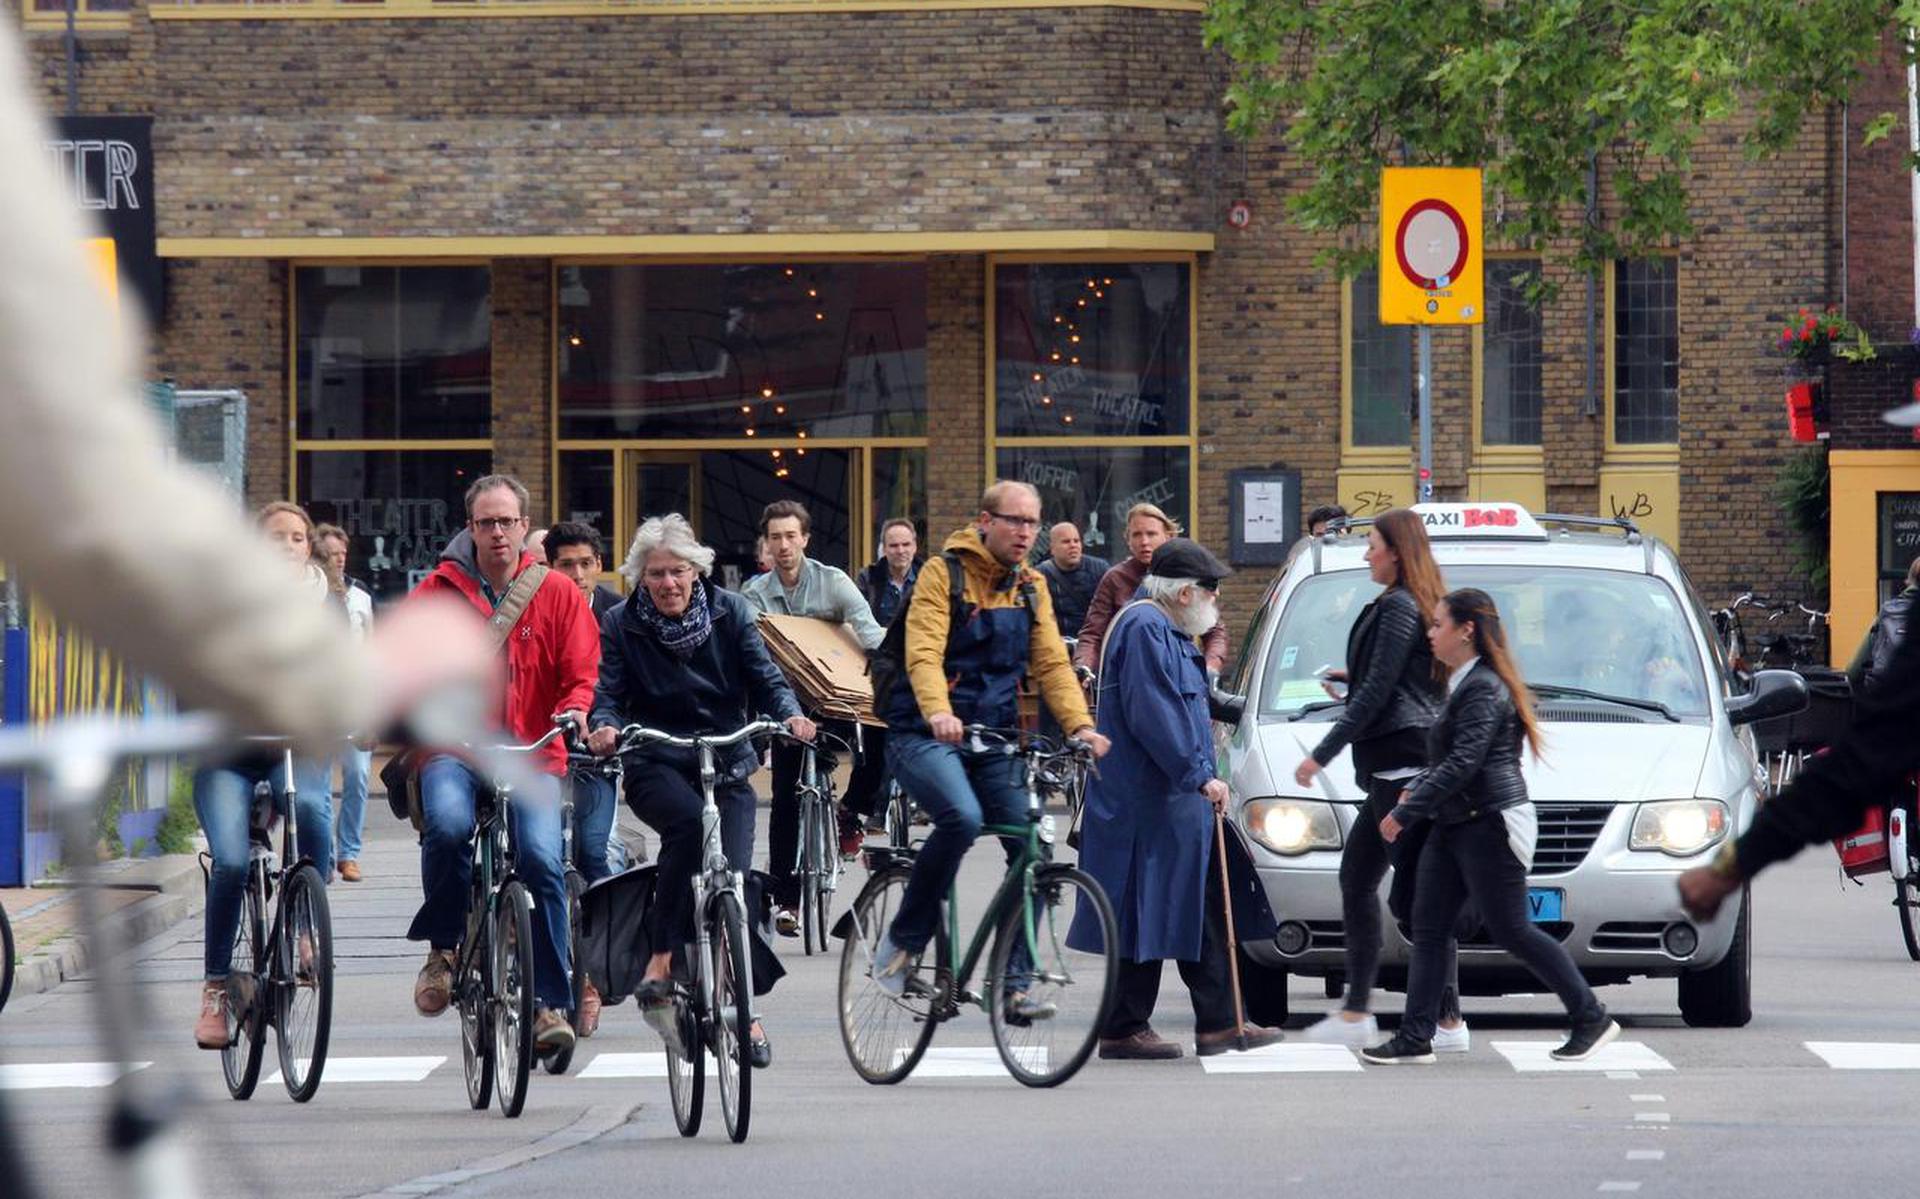 ‘We flaneren door de stad waar de voetganger en de fietser het beeld bepalen, niet overal geparkeerde auto’s.’ 